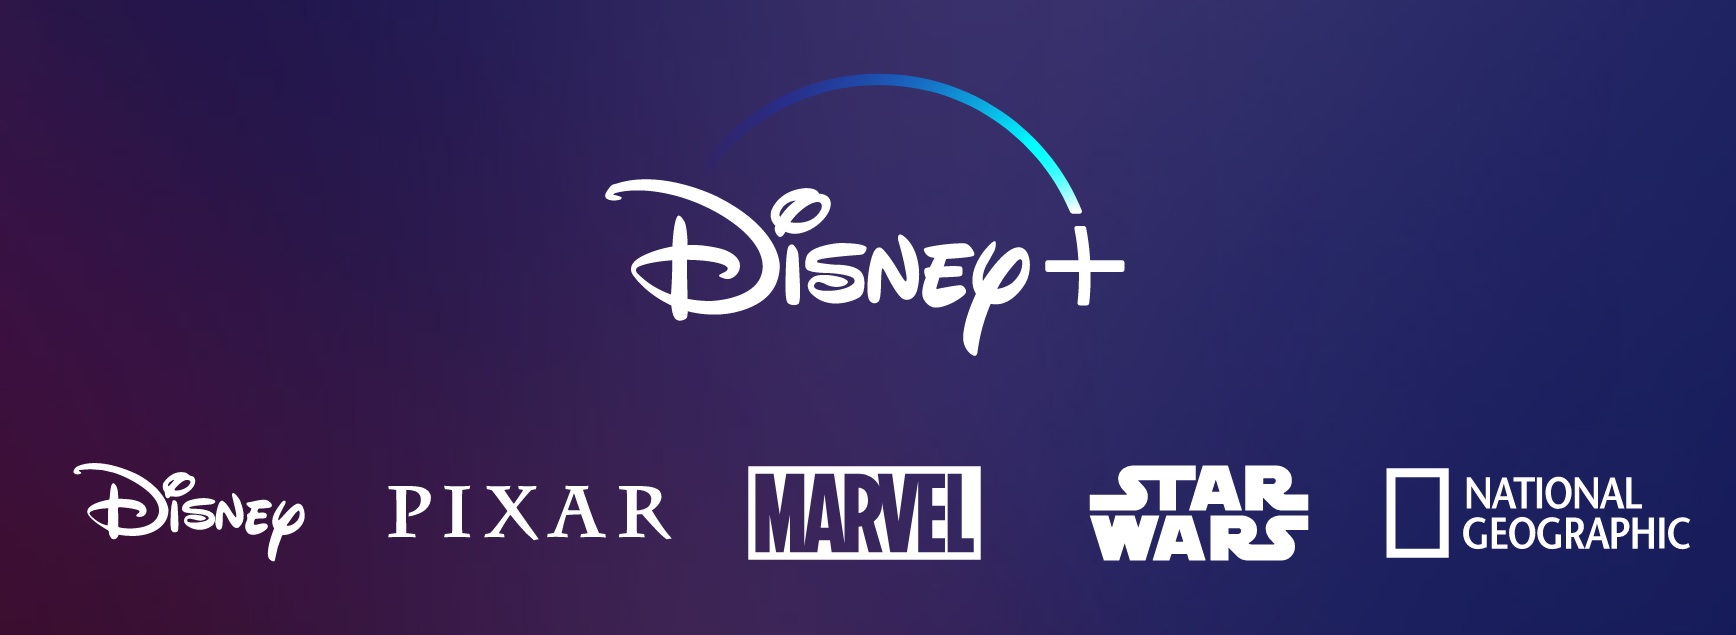 Disney+: come funziona e prezzi del servizio streaming